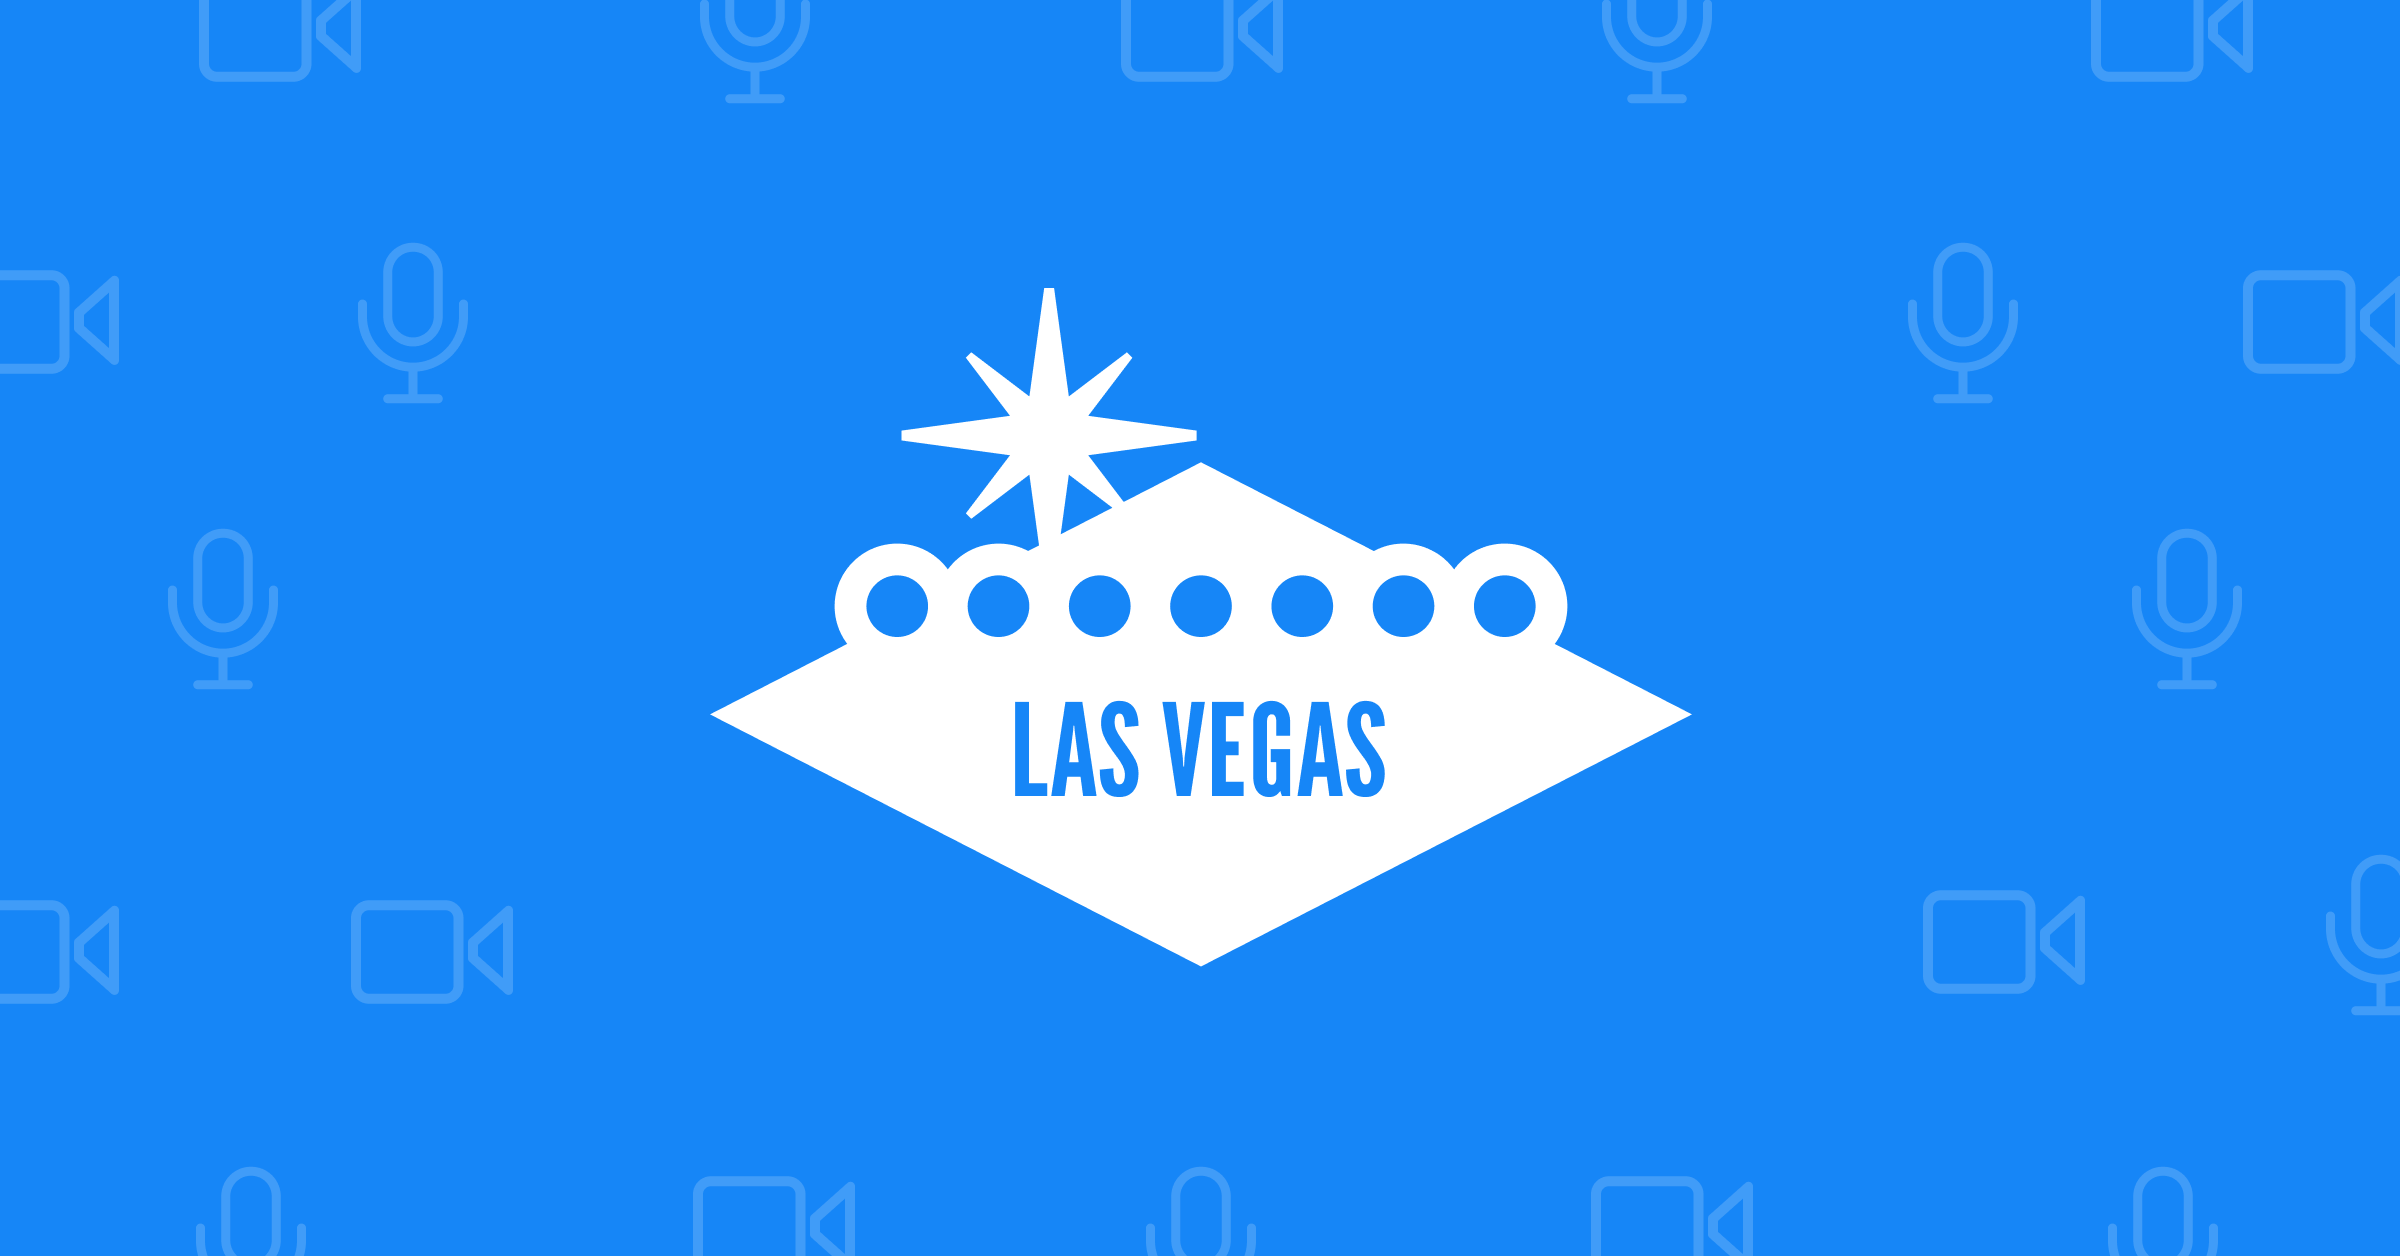 Top Marketing Conferences - Las Vegas - WegoPro